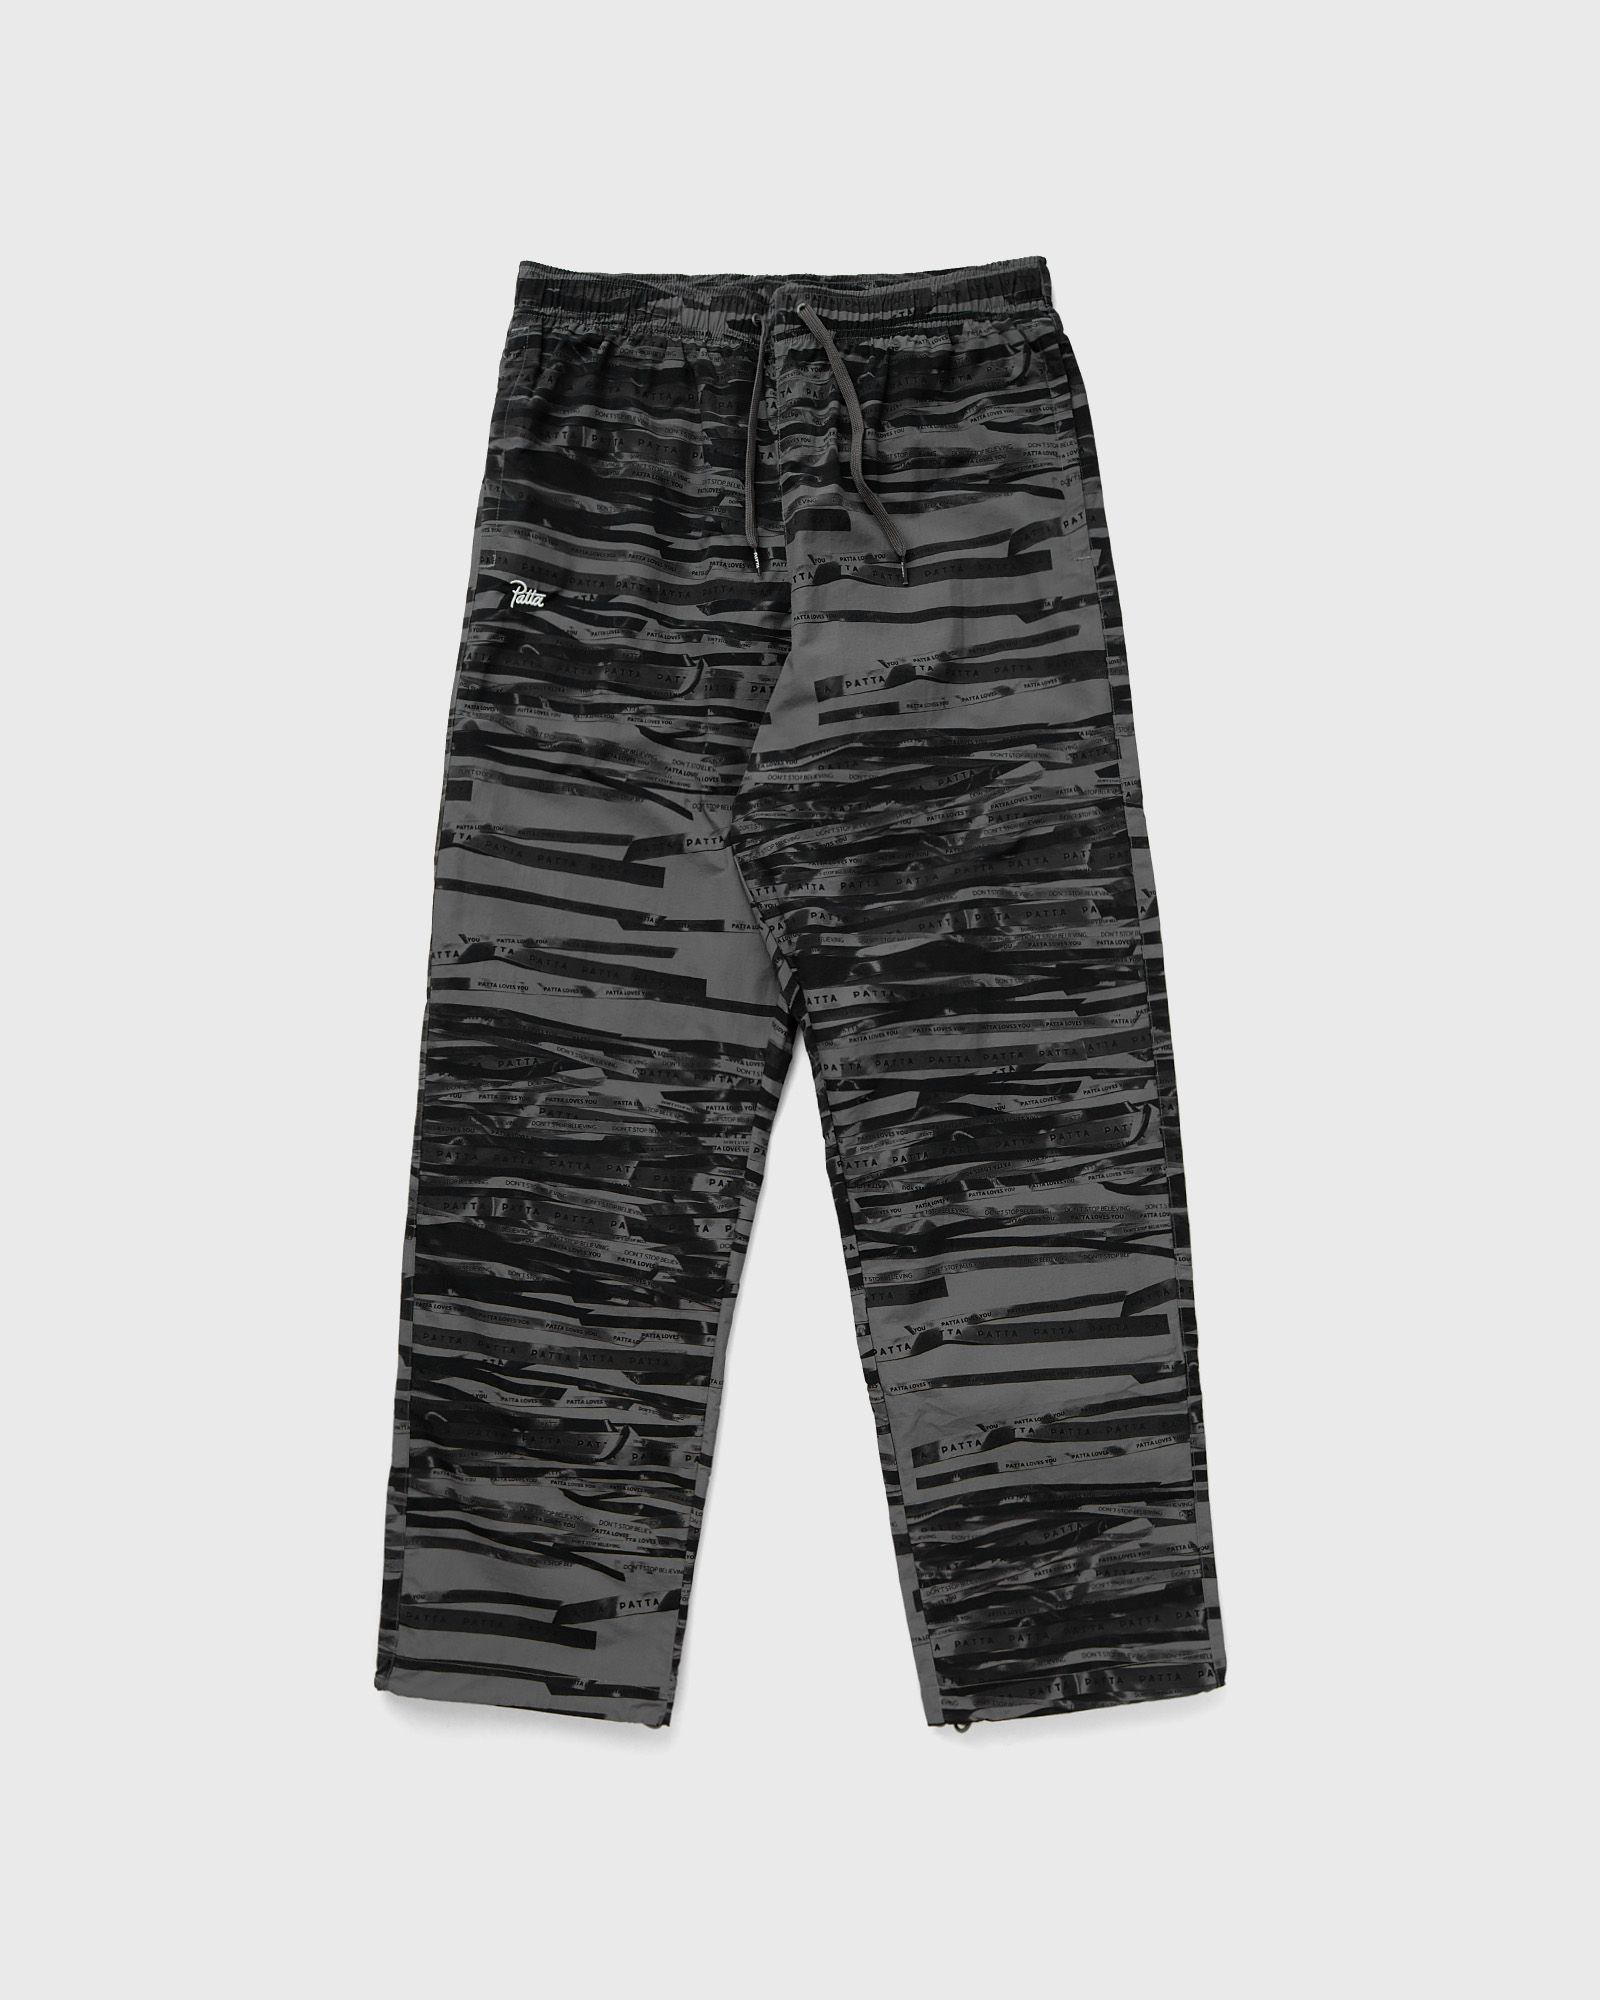 PATTA - ribbons nylon m2 track pants men track pants black|grey in größe:xl